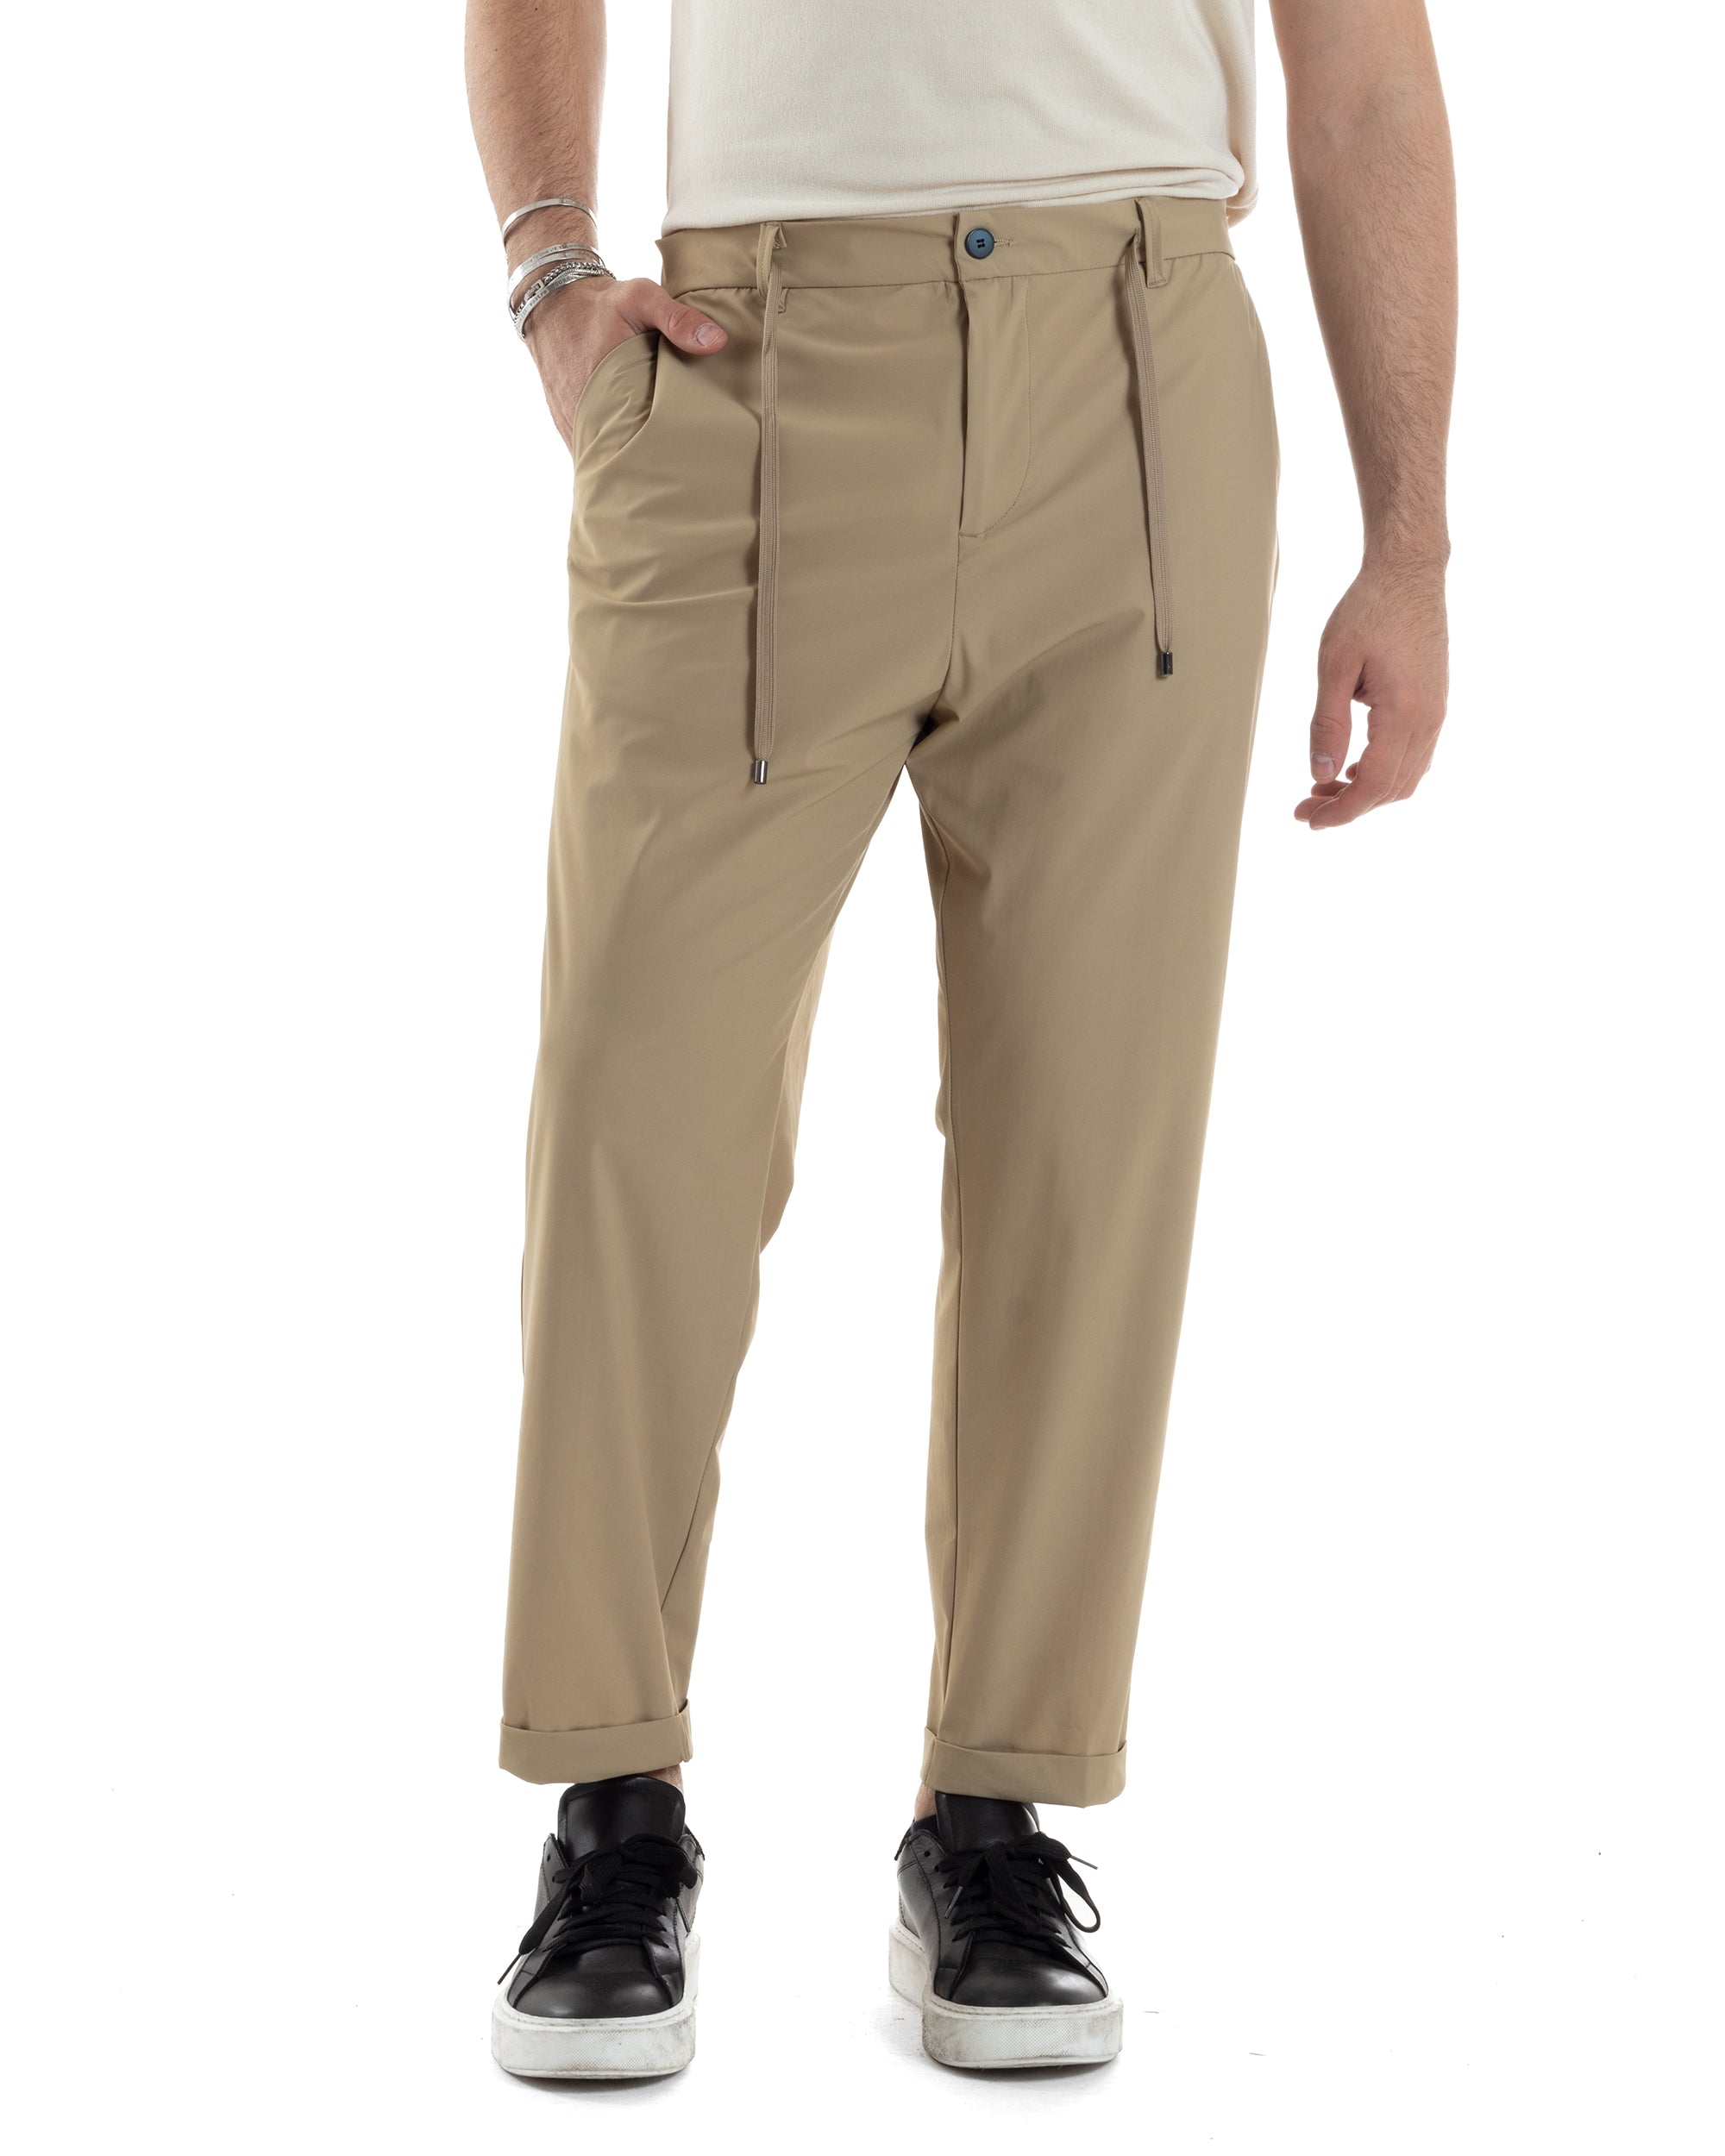 Pantaloni Uomo Tasca America Classico Tessuto Tecnico No Stiro Antipioggia Casual Beige GIOSAL-P6100A